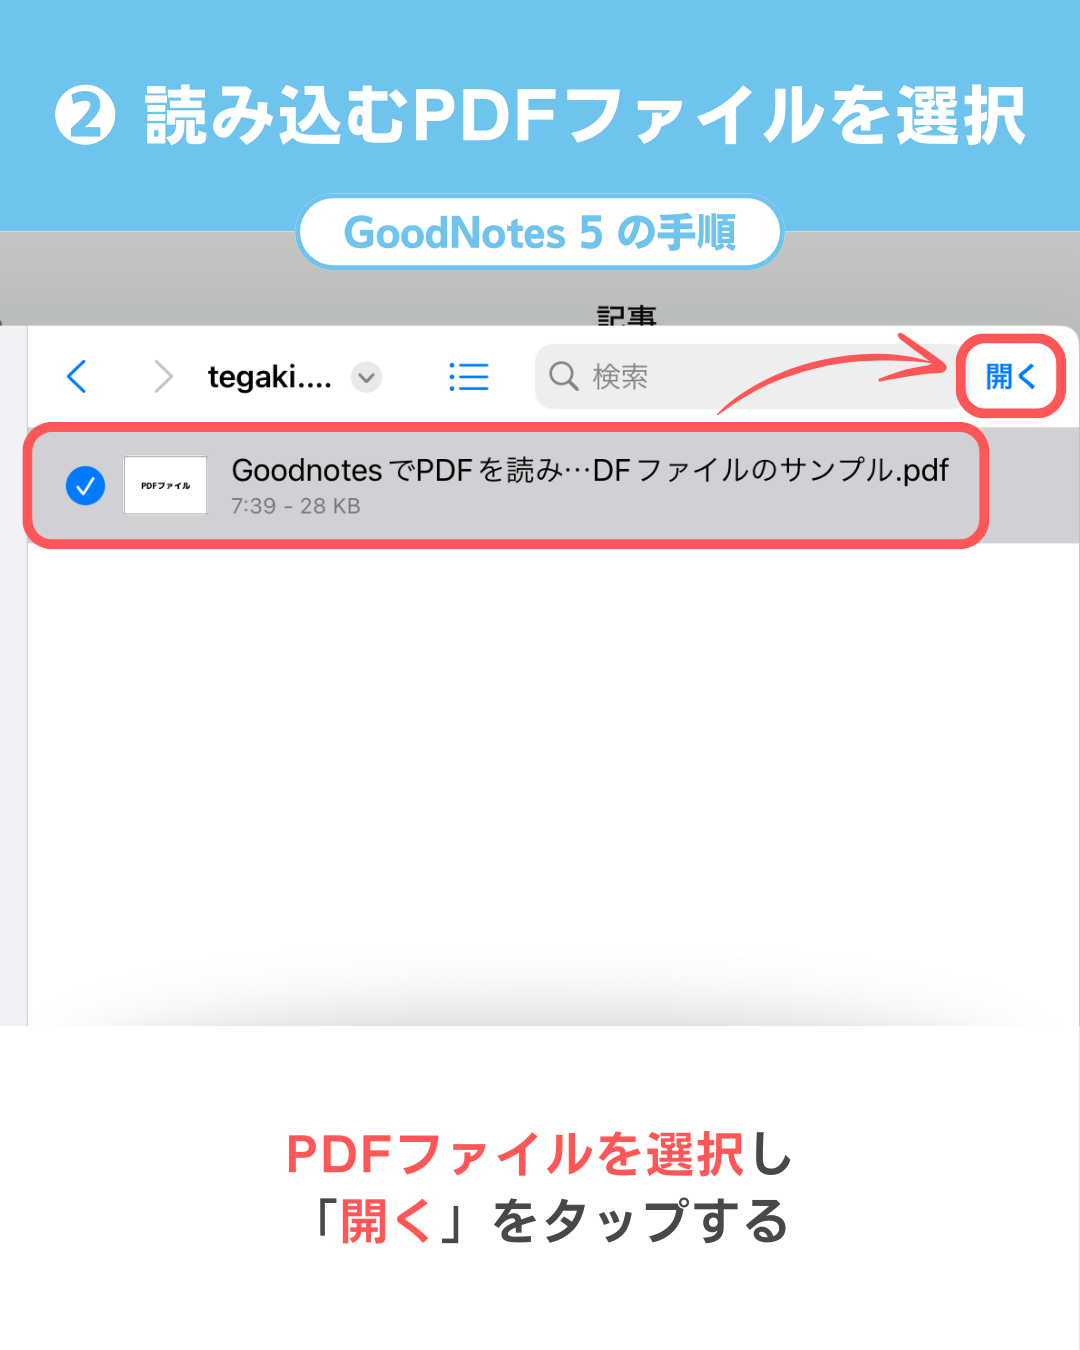 GoodNotes 5にPDFを読み込む・取り込む手順 - PDFを選ぶ